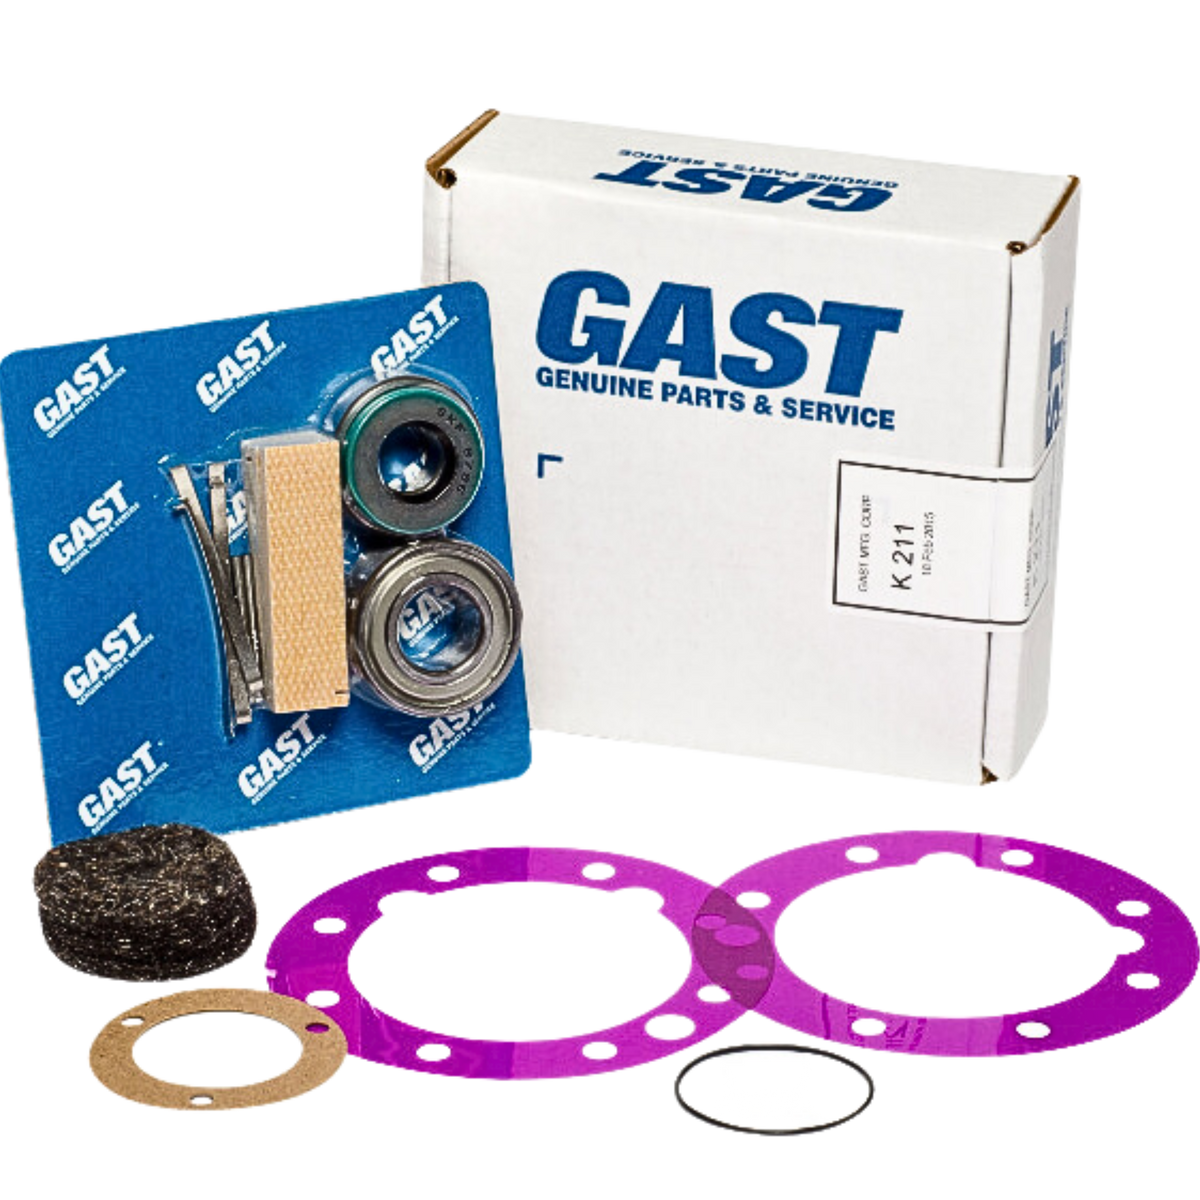 Gast | 8AM Service Kit (4 vane) | K211 used on gast product line